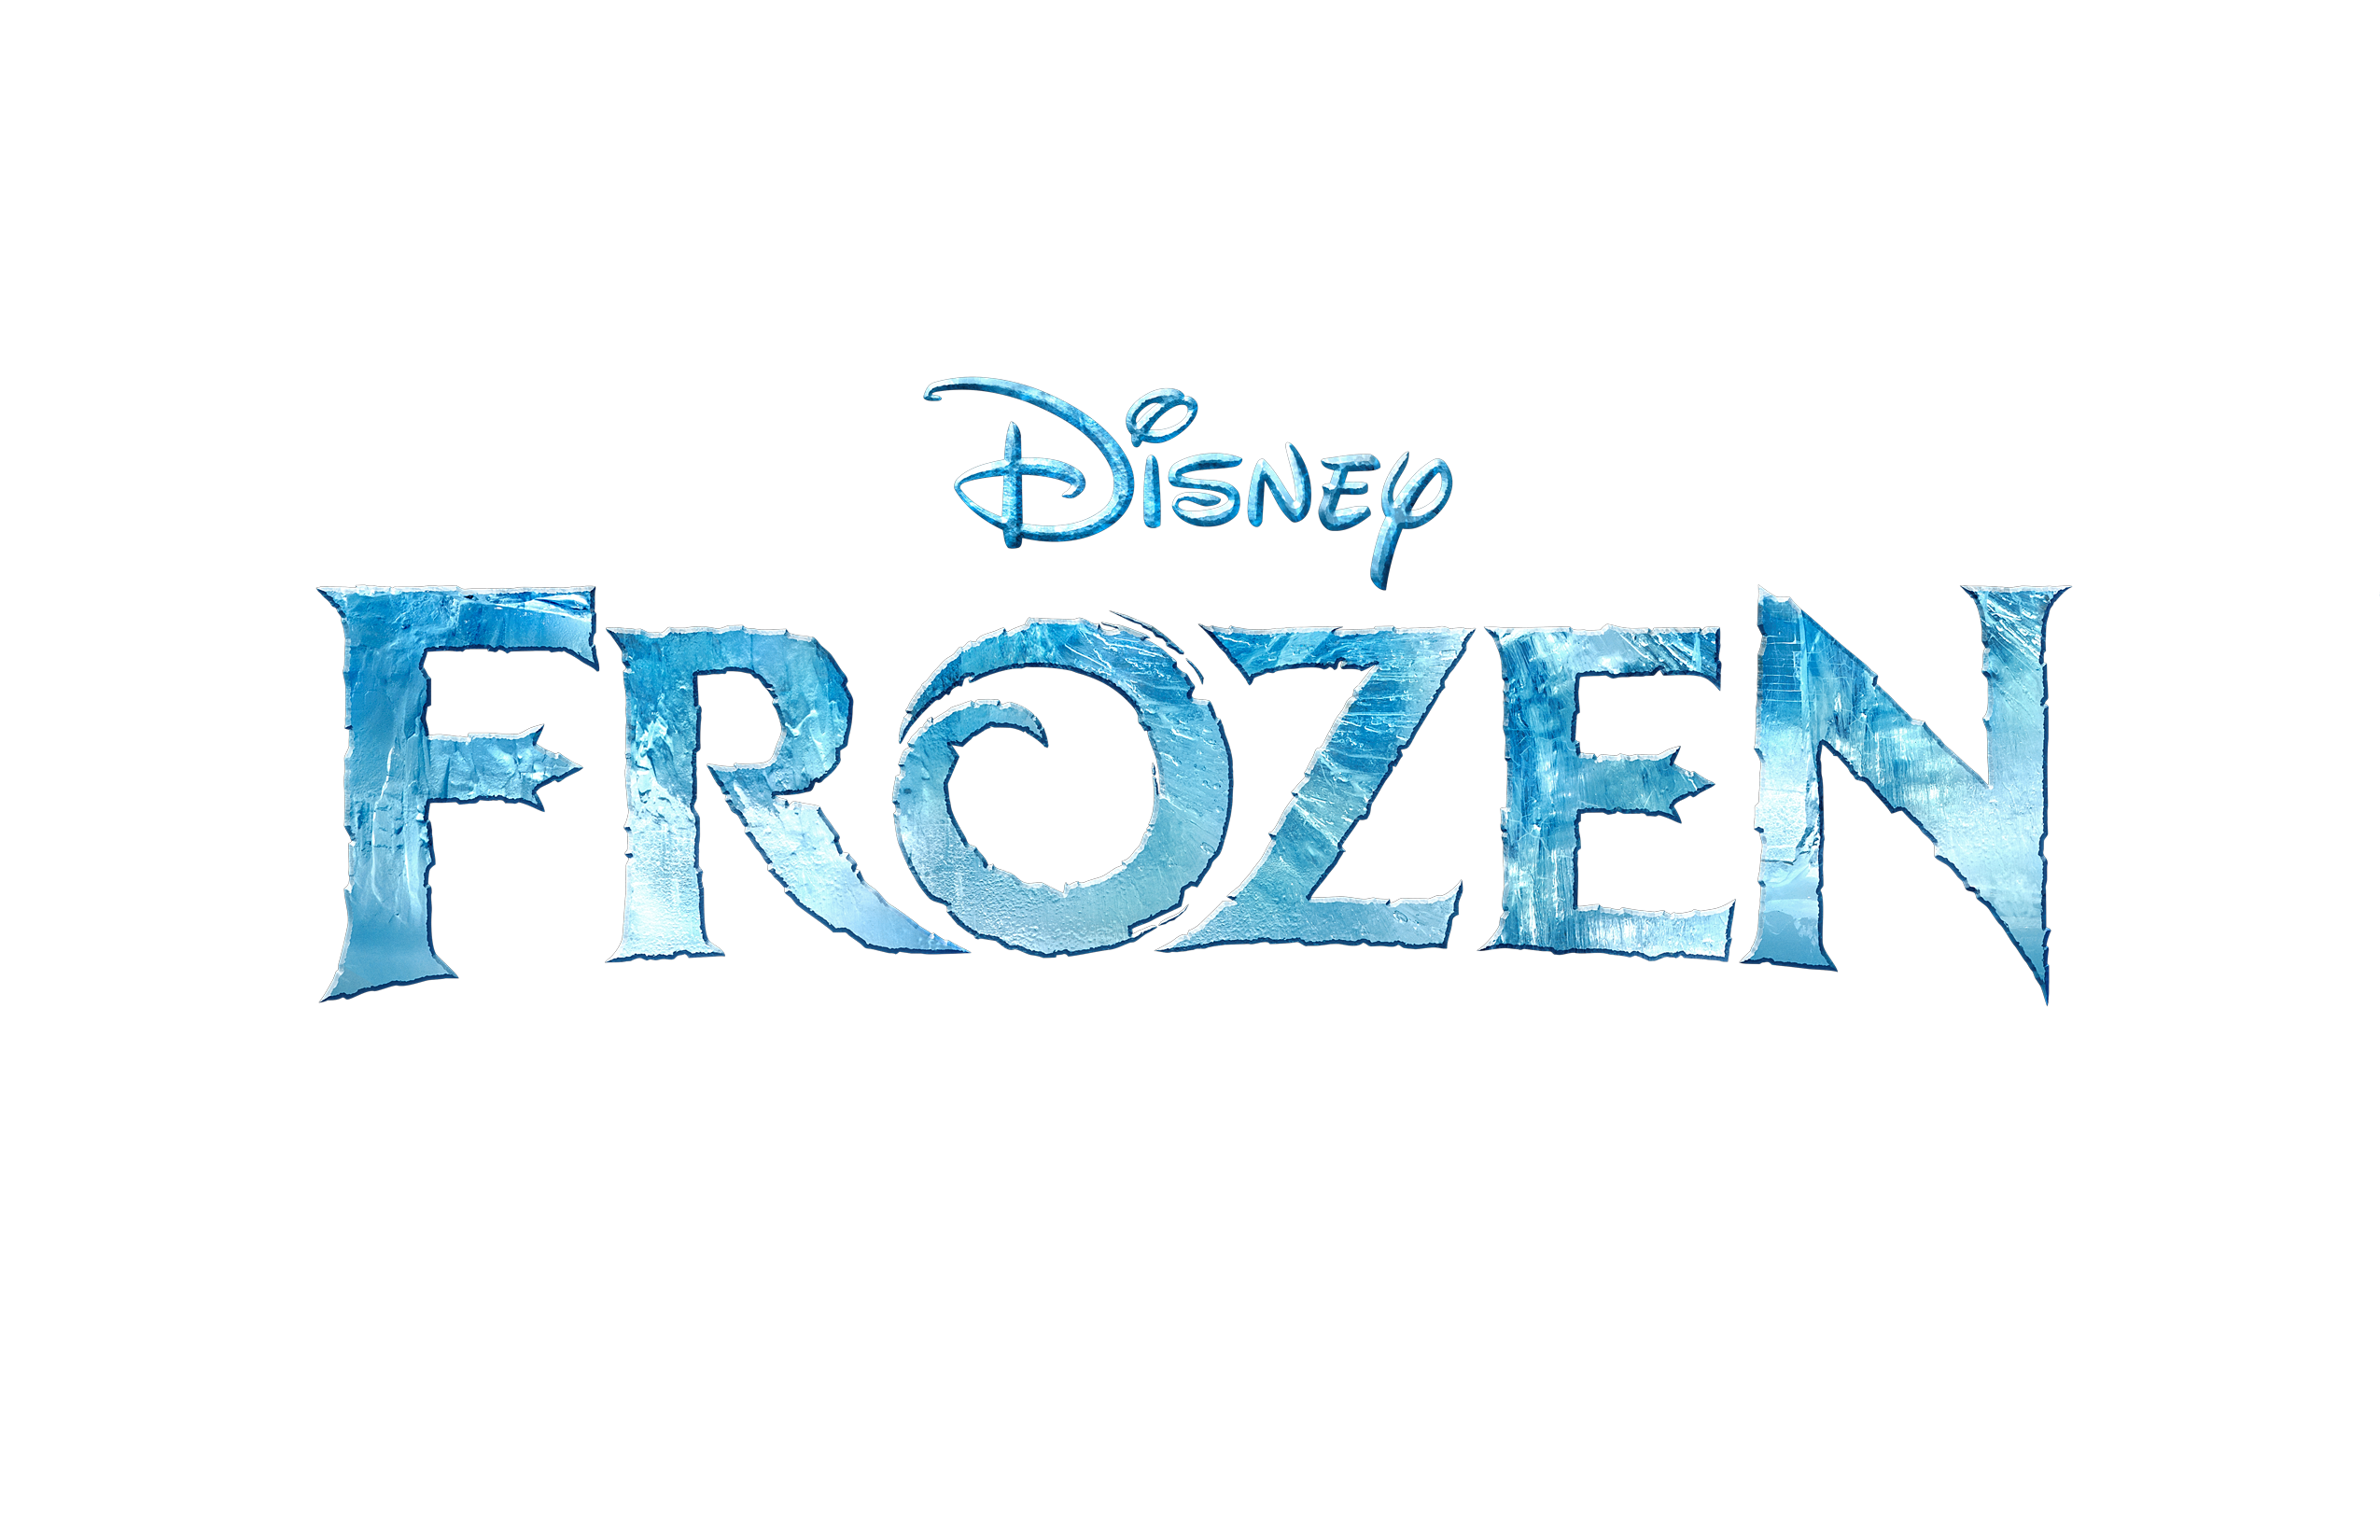 Elsa clipart logo, Elsa logo Transparent FREE for download